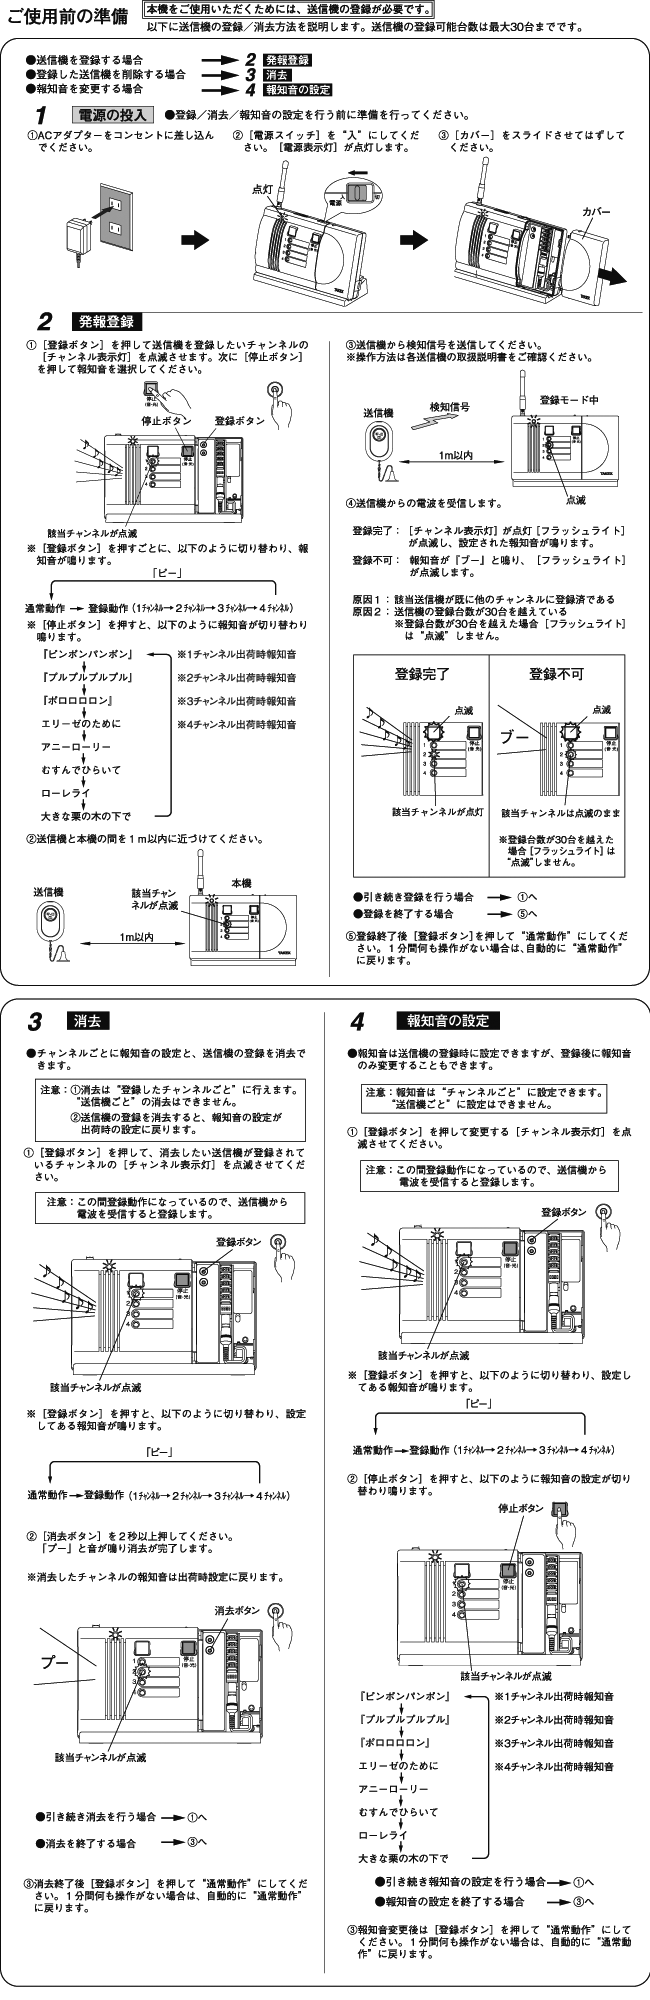 送料無料 激安 お買い得 キ゛フト MAGOKORO広島アクセスコール卓上型受信機 HC-350 小電力型 徘徊お知らせ 位置確認 TAKEX  竹中エンジニアリング